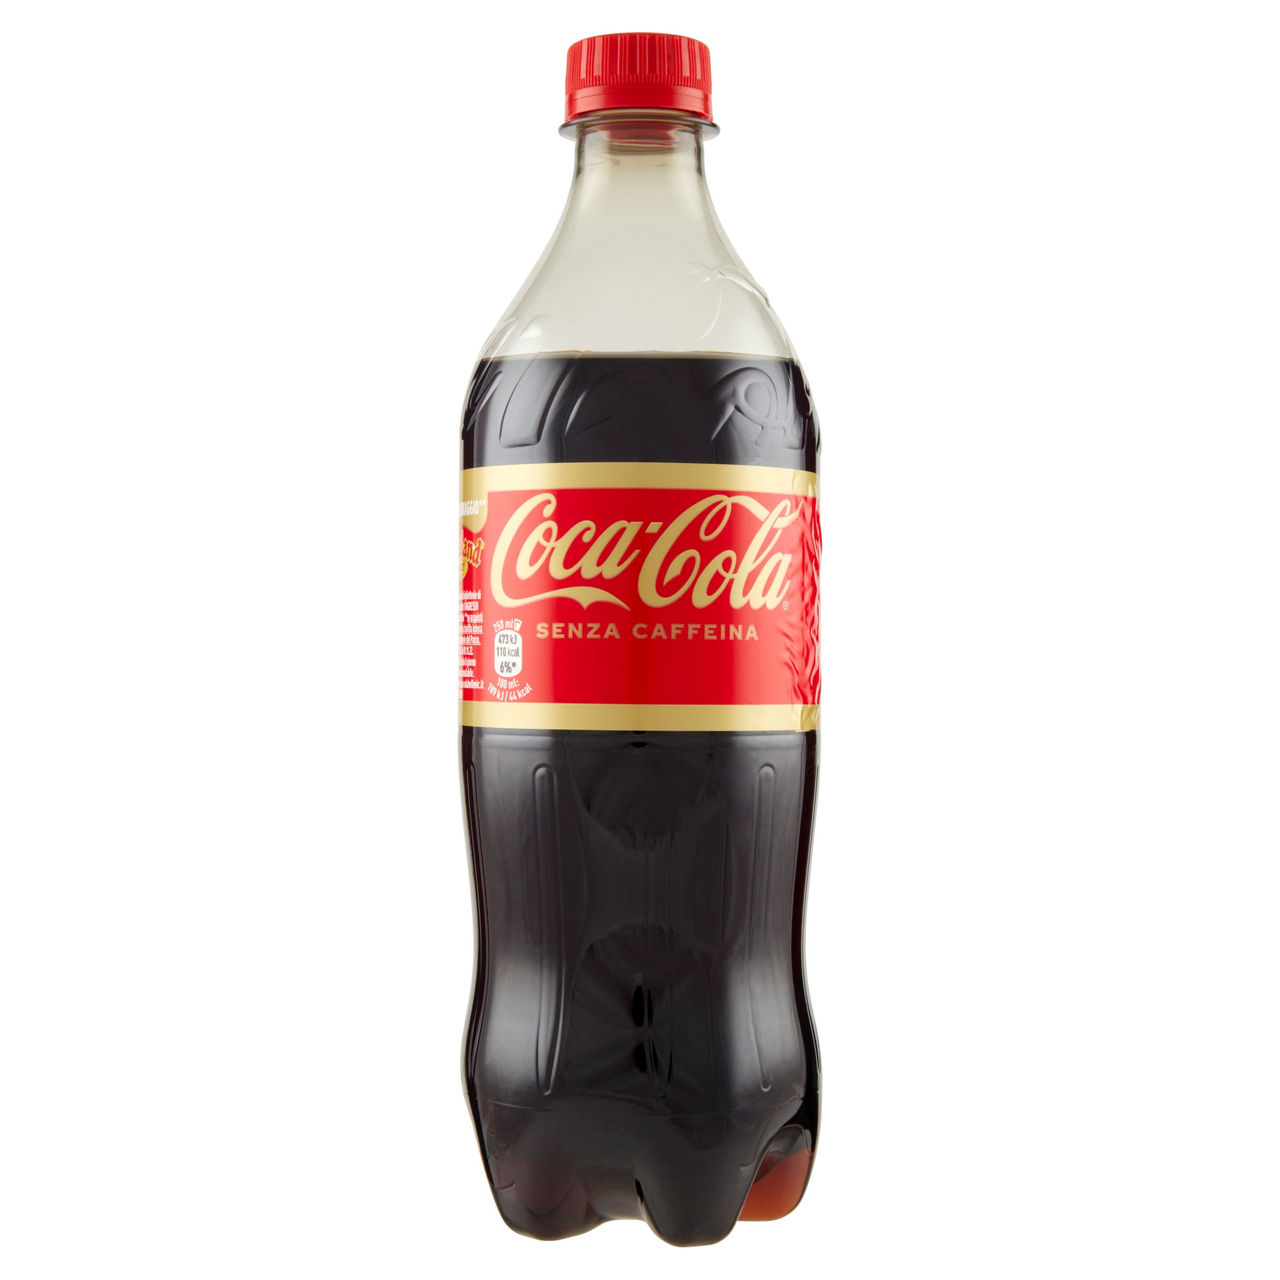 Coca-Cola Senza Caffeina Bottiglia in PET 660 ml